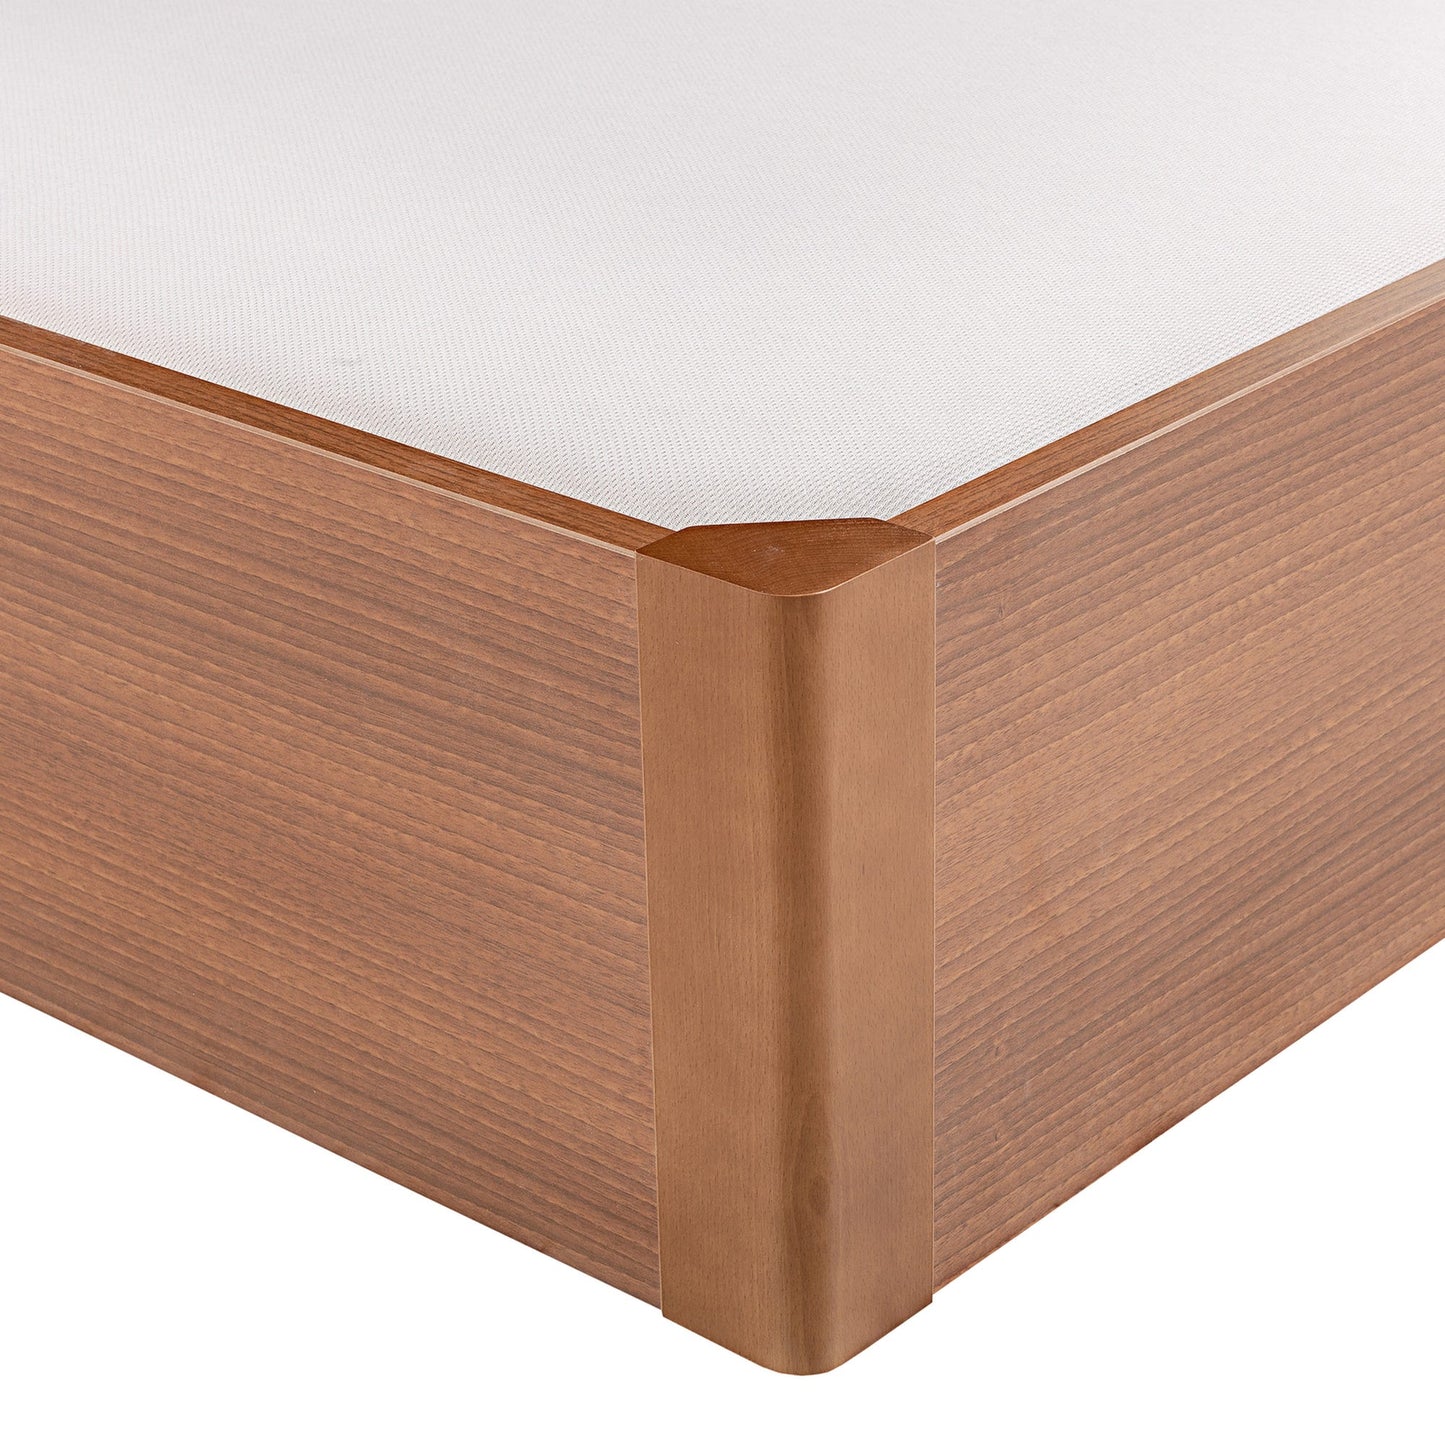 Canapé abatible de madera tapa única de color cerezo - DESIGN - 80x190